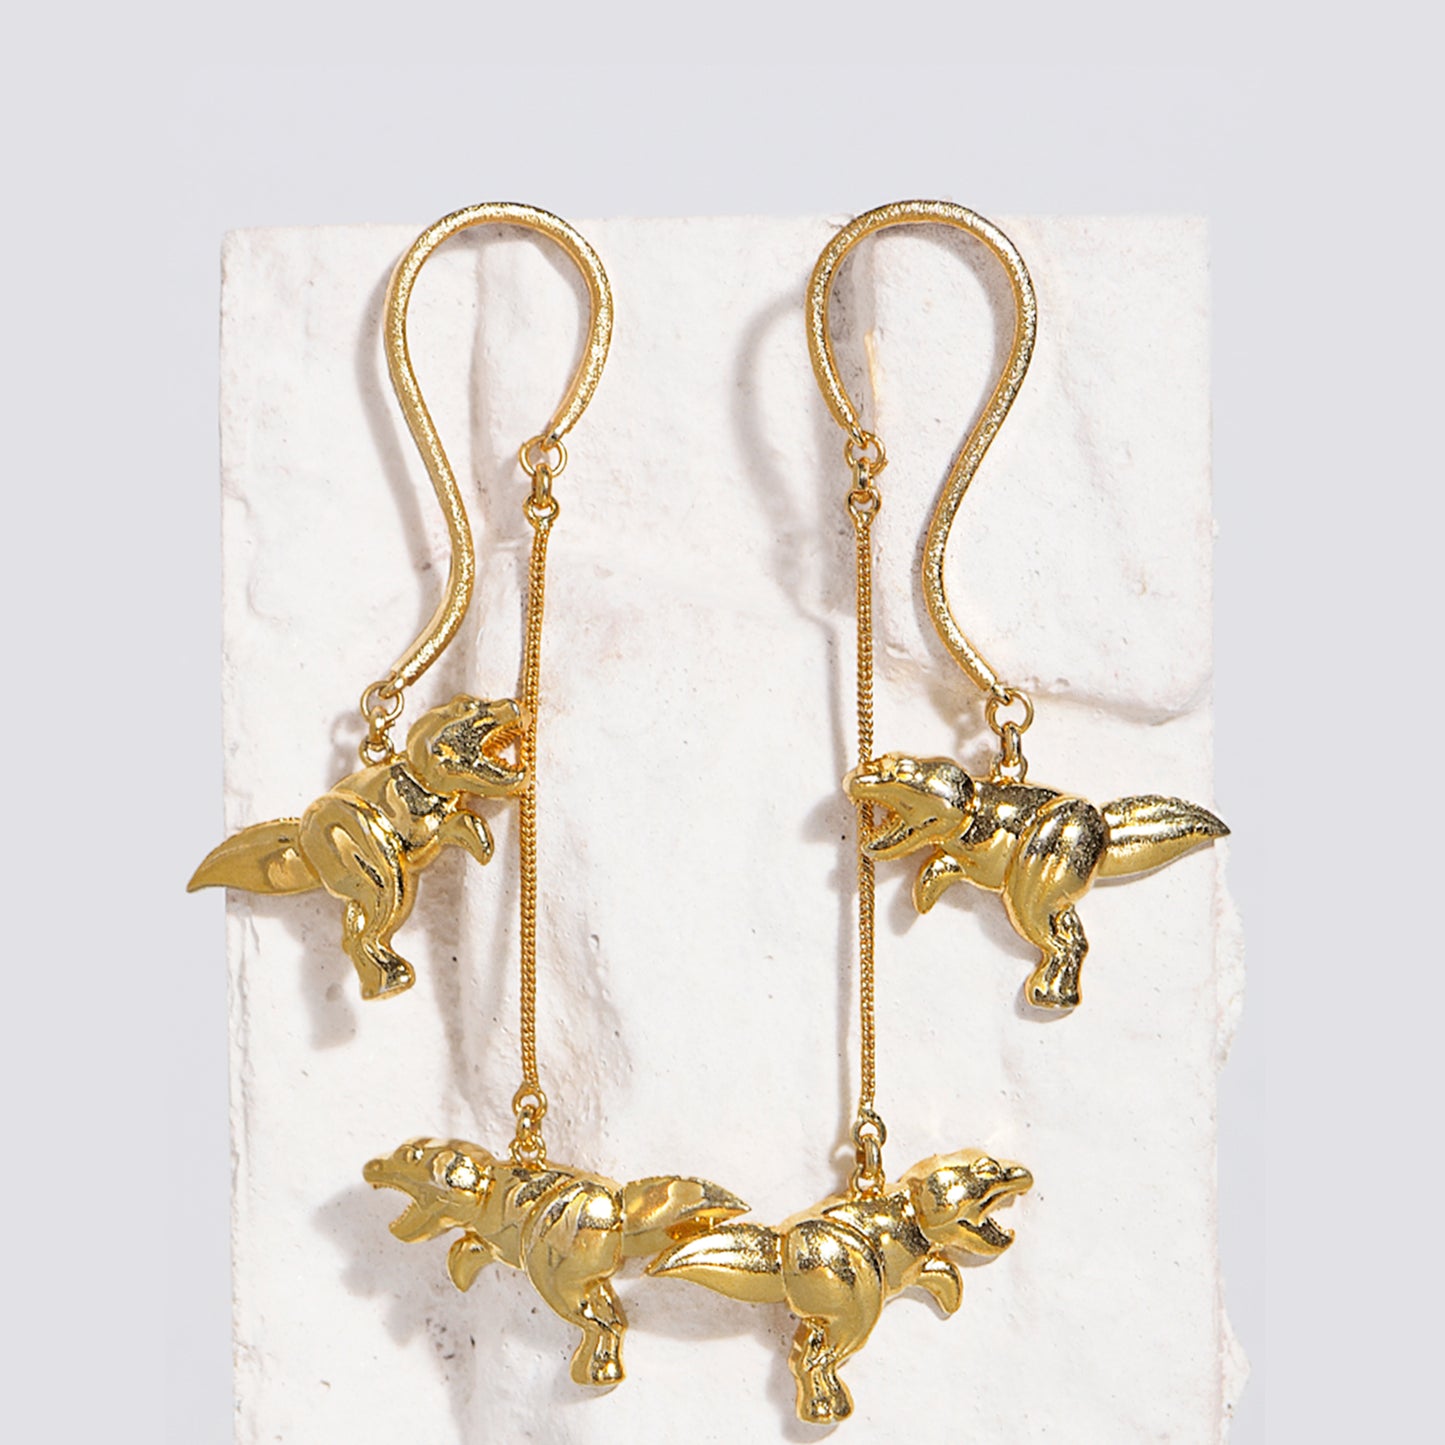 T-rex Ballet earrings